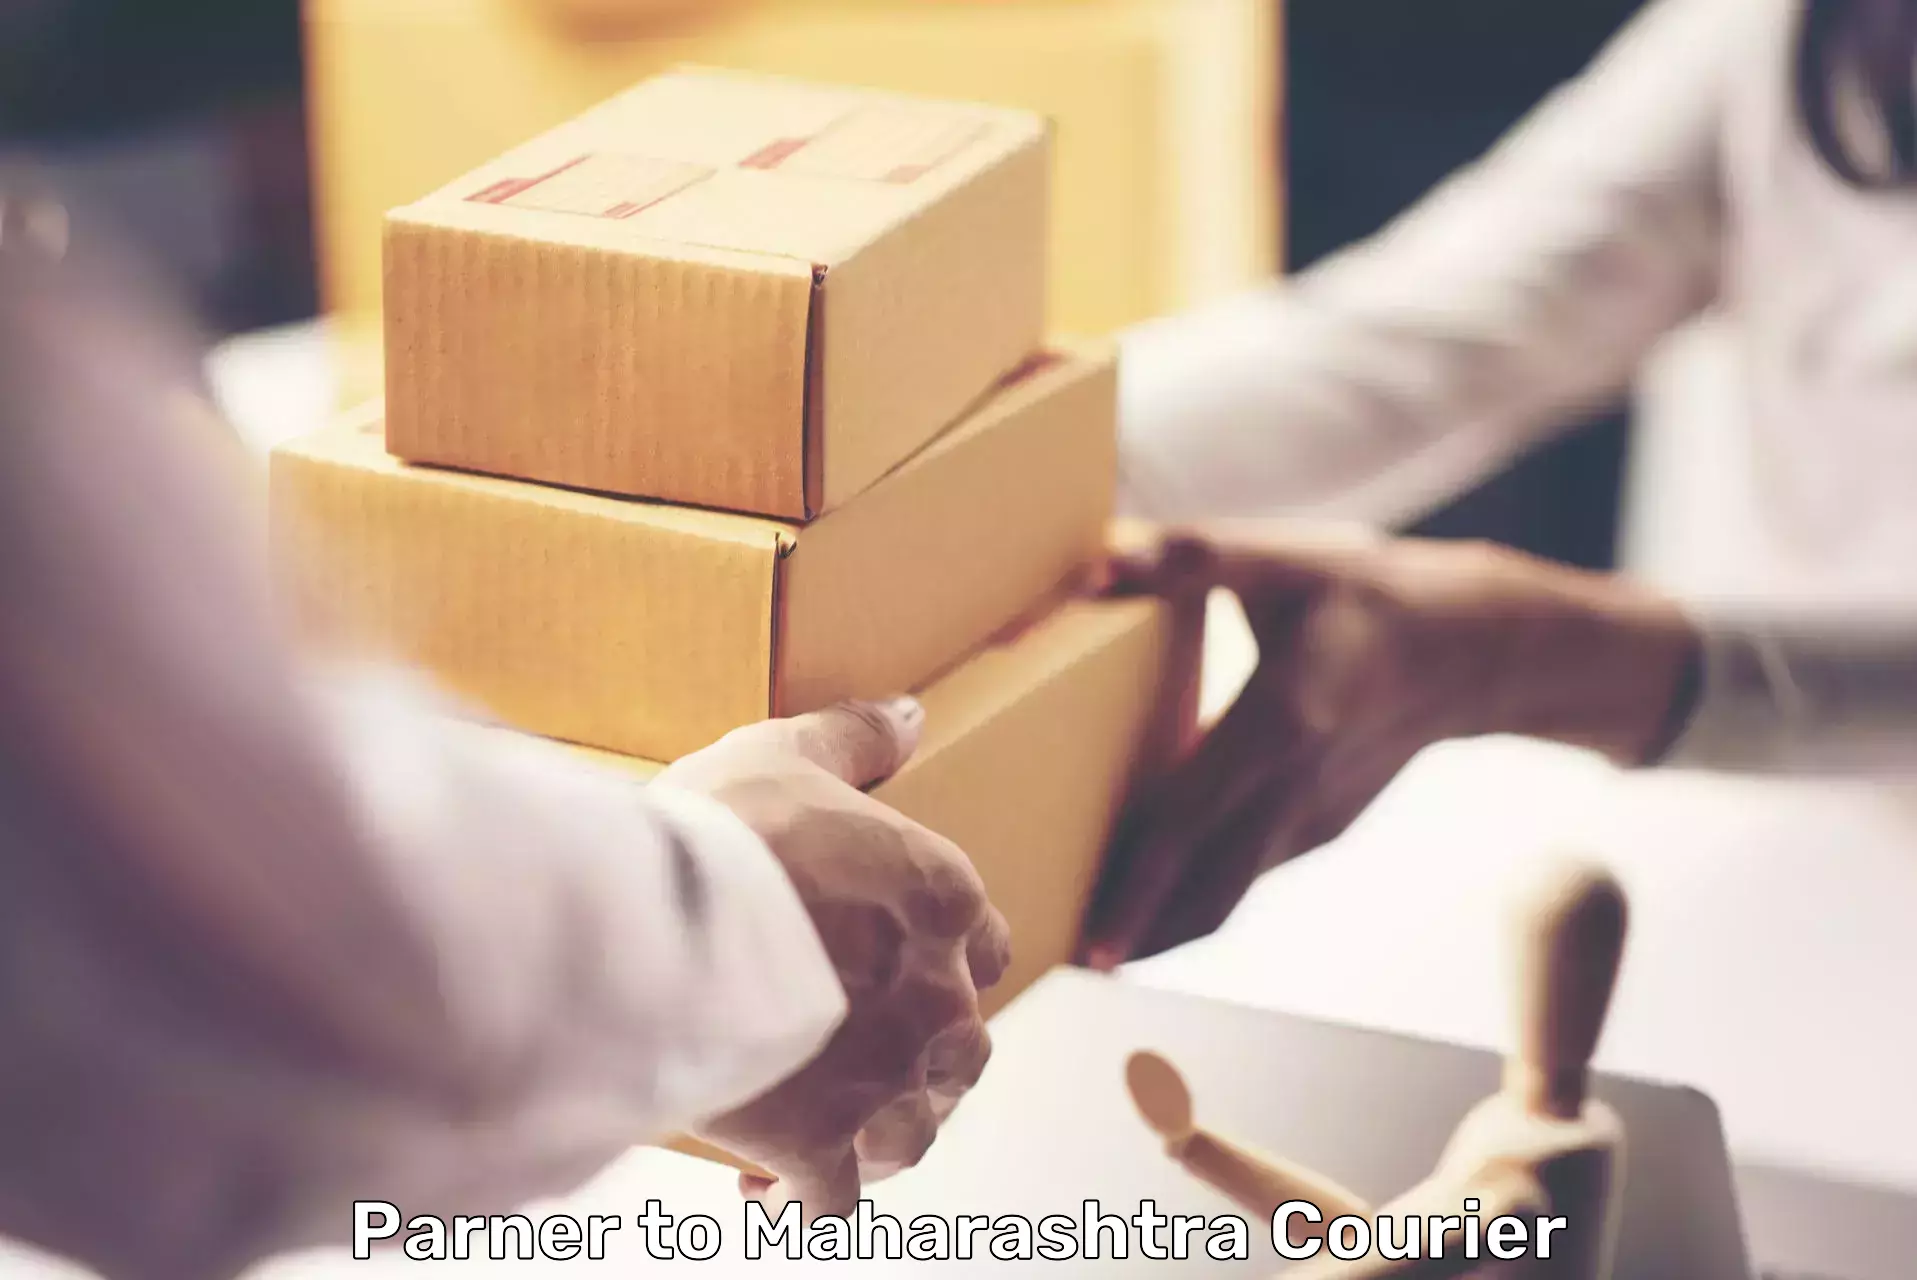 Efficient parcel delivery Parner to Partur